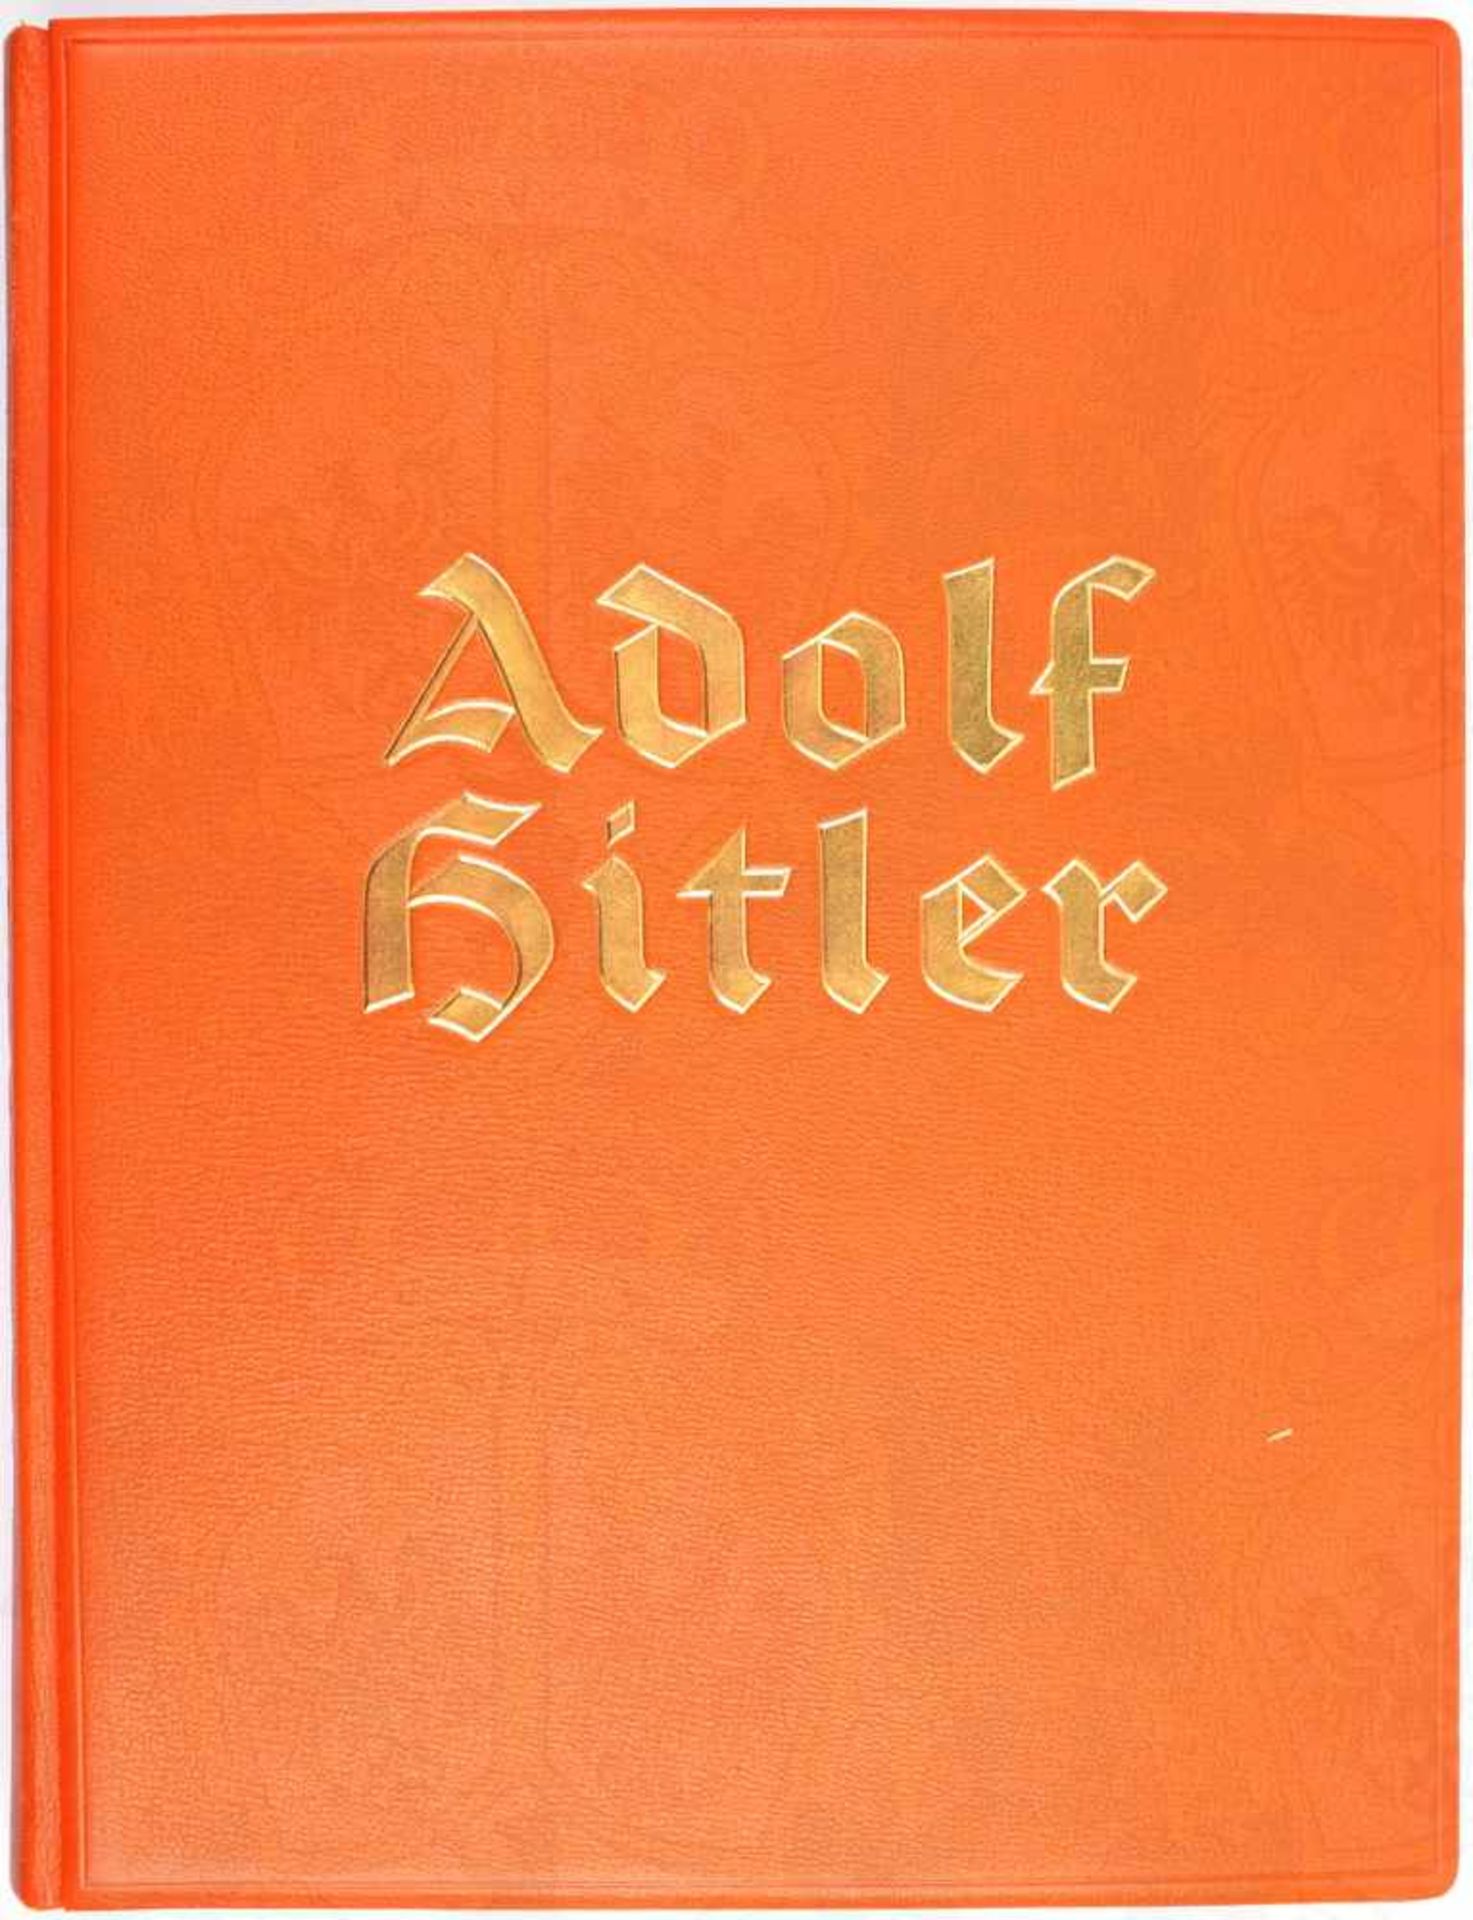 ADOLF HITLER, Bilder aus dem Leben des Führers, Nummerierte Prachtausgabe in goldgeprägtem